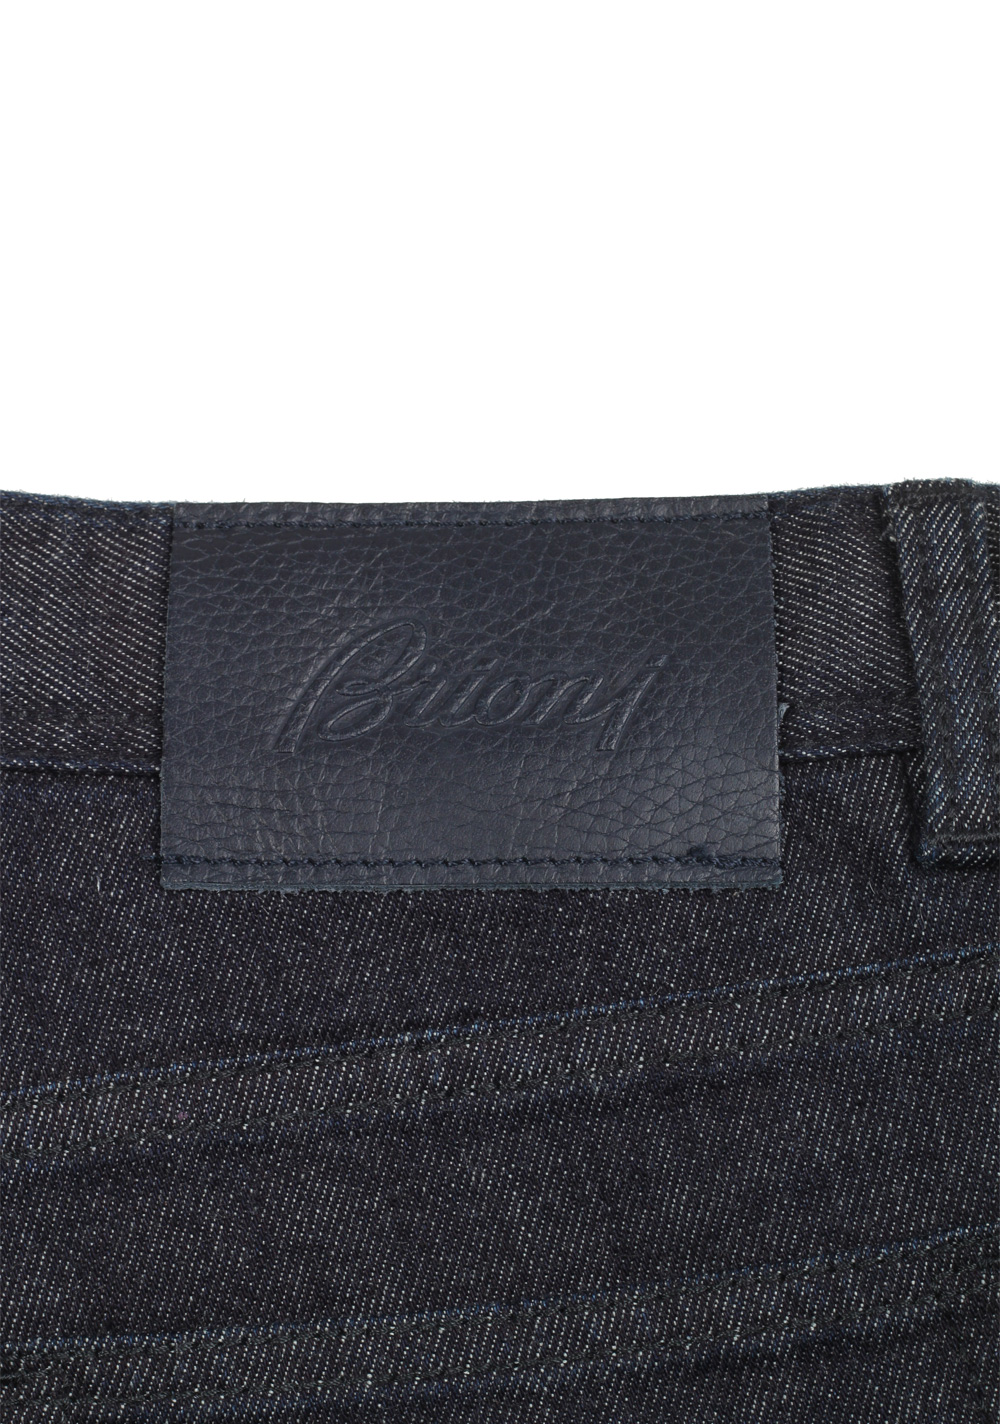 Brioni Blue Jeans SPL400 Trousers Size 50 / 34 U.S. | Costume Limité